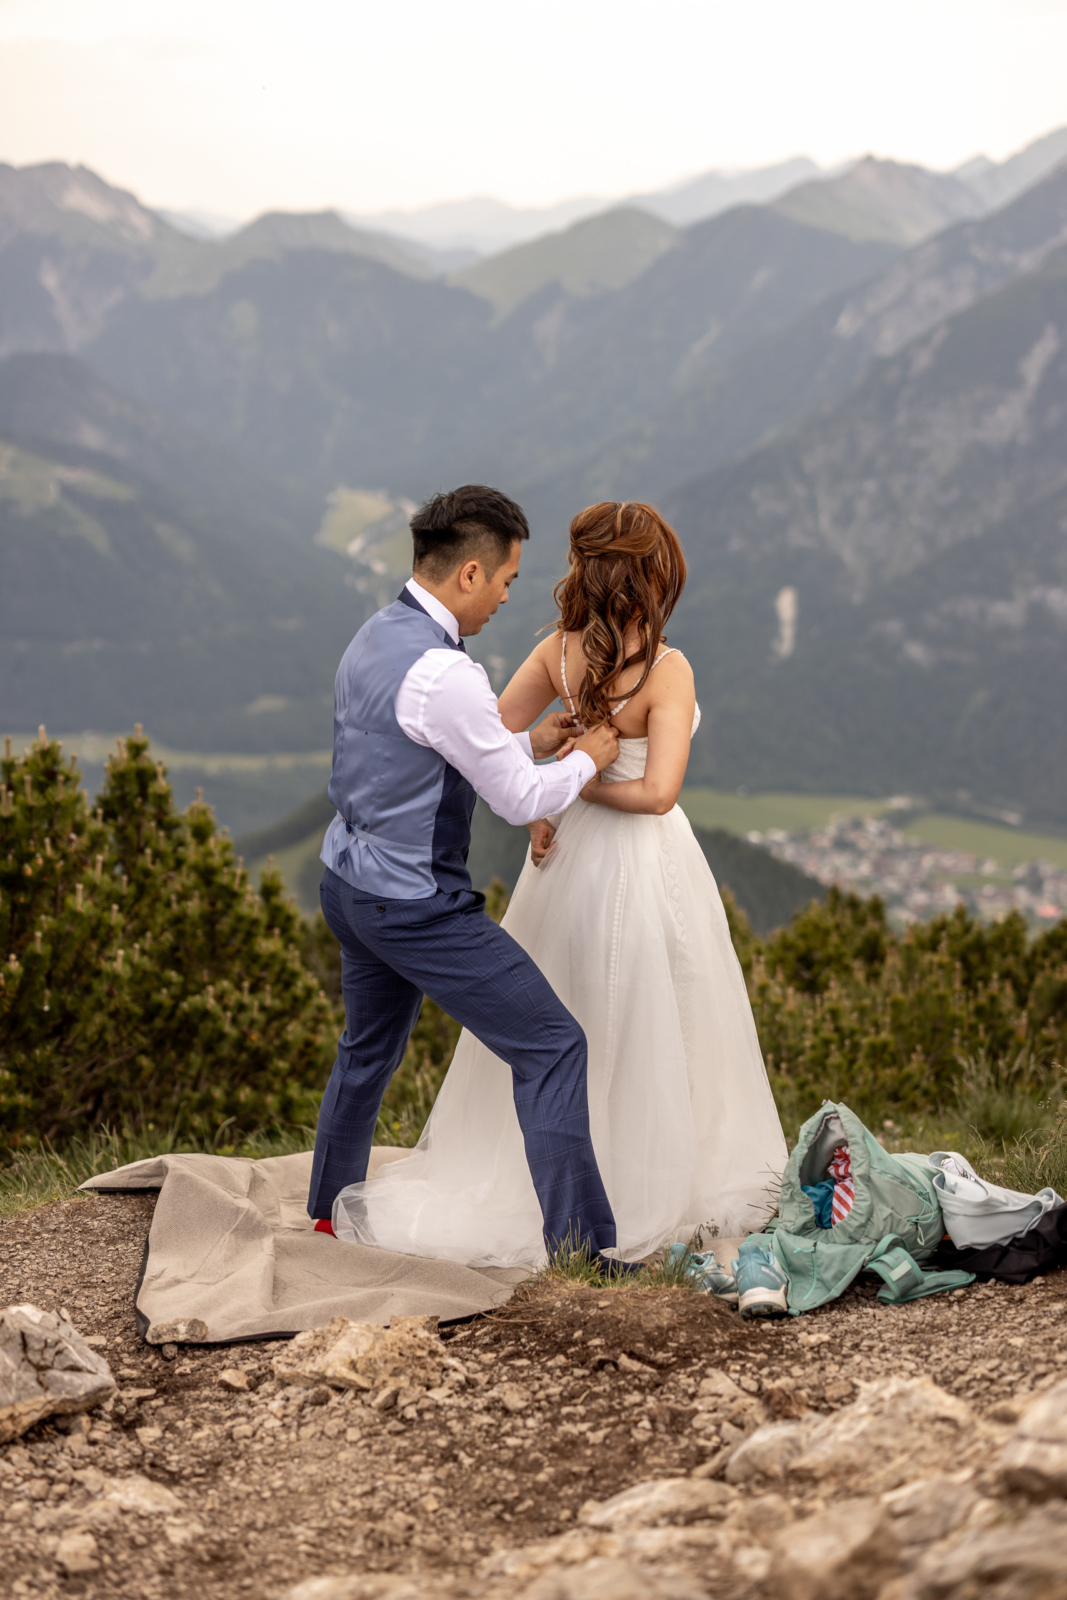 Elopement wedding getting ready in tyrol austria